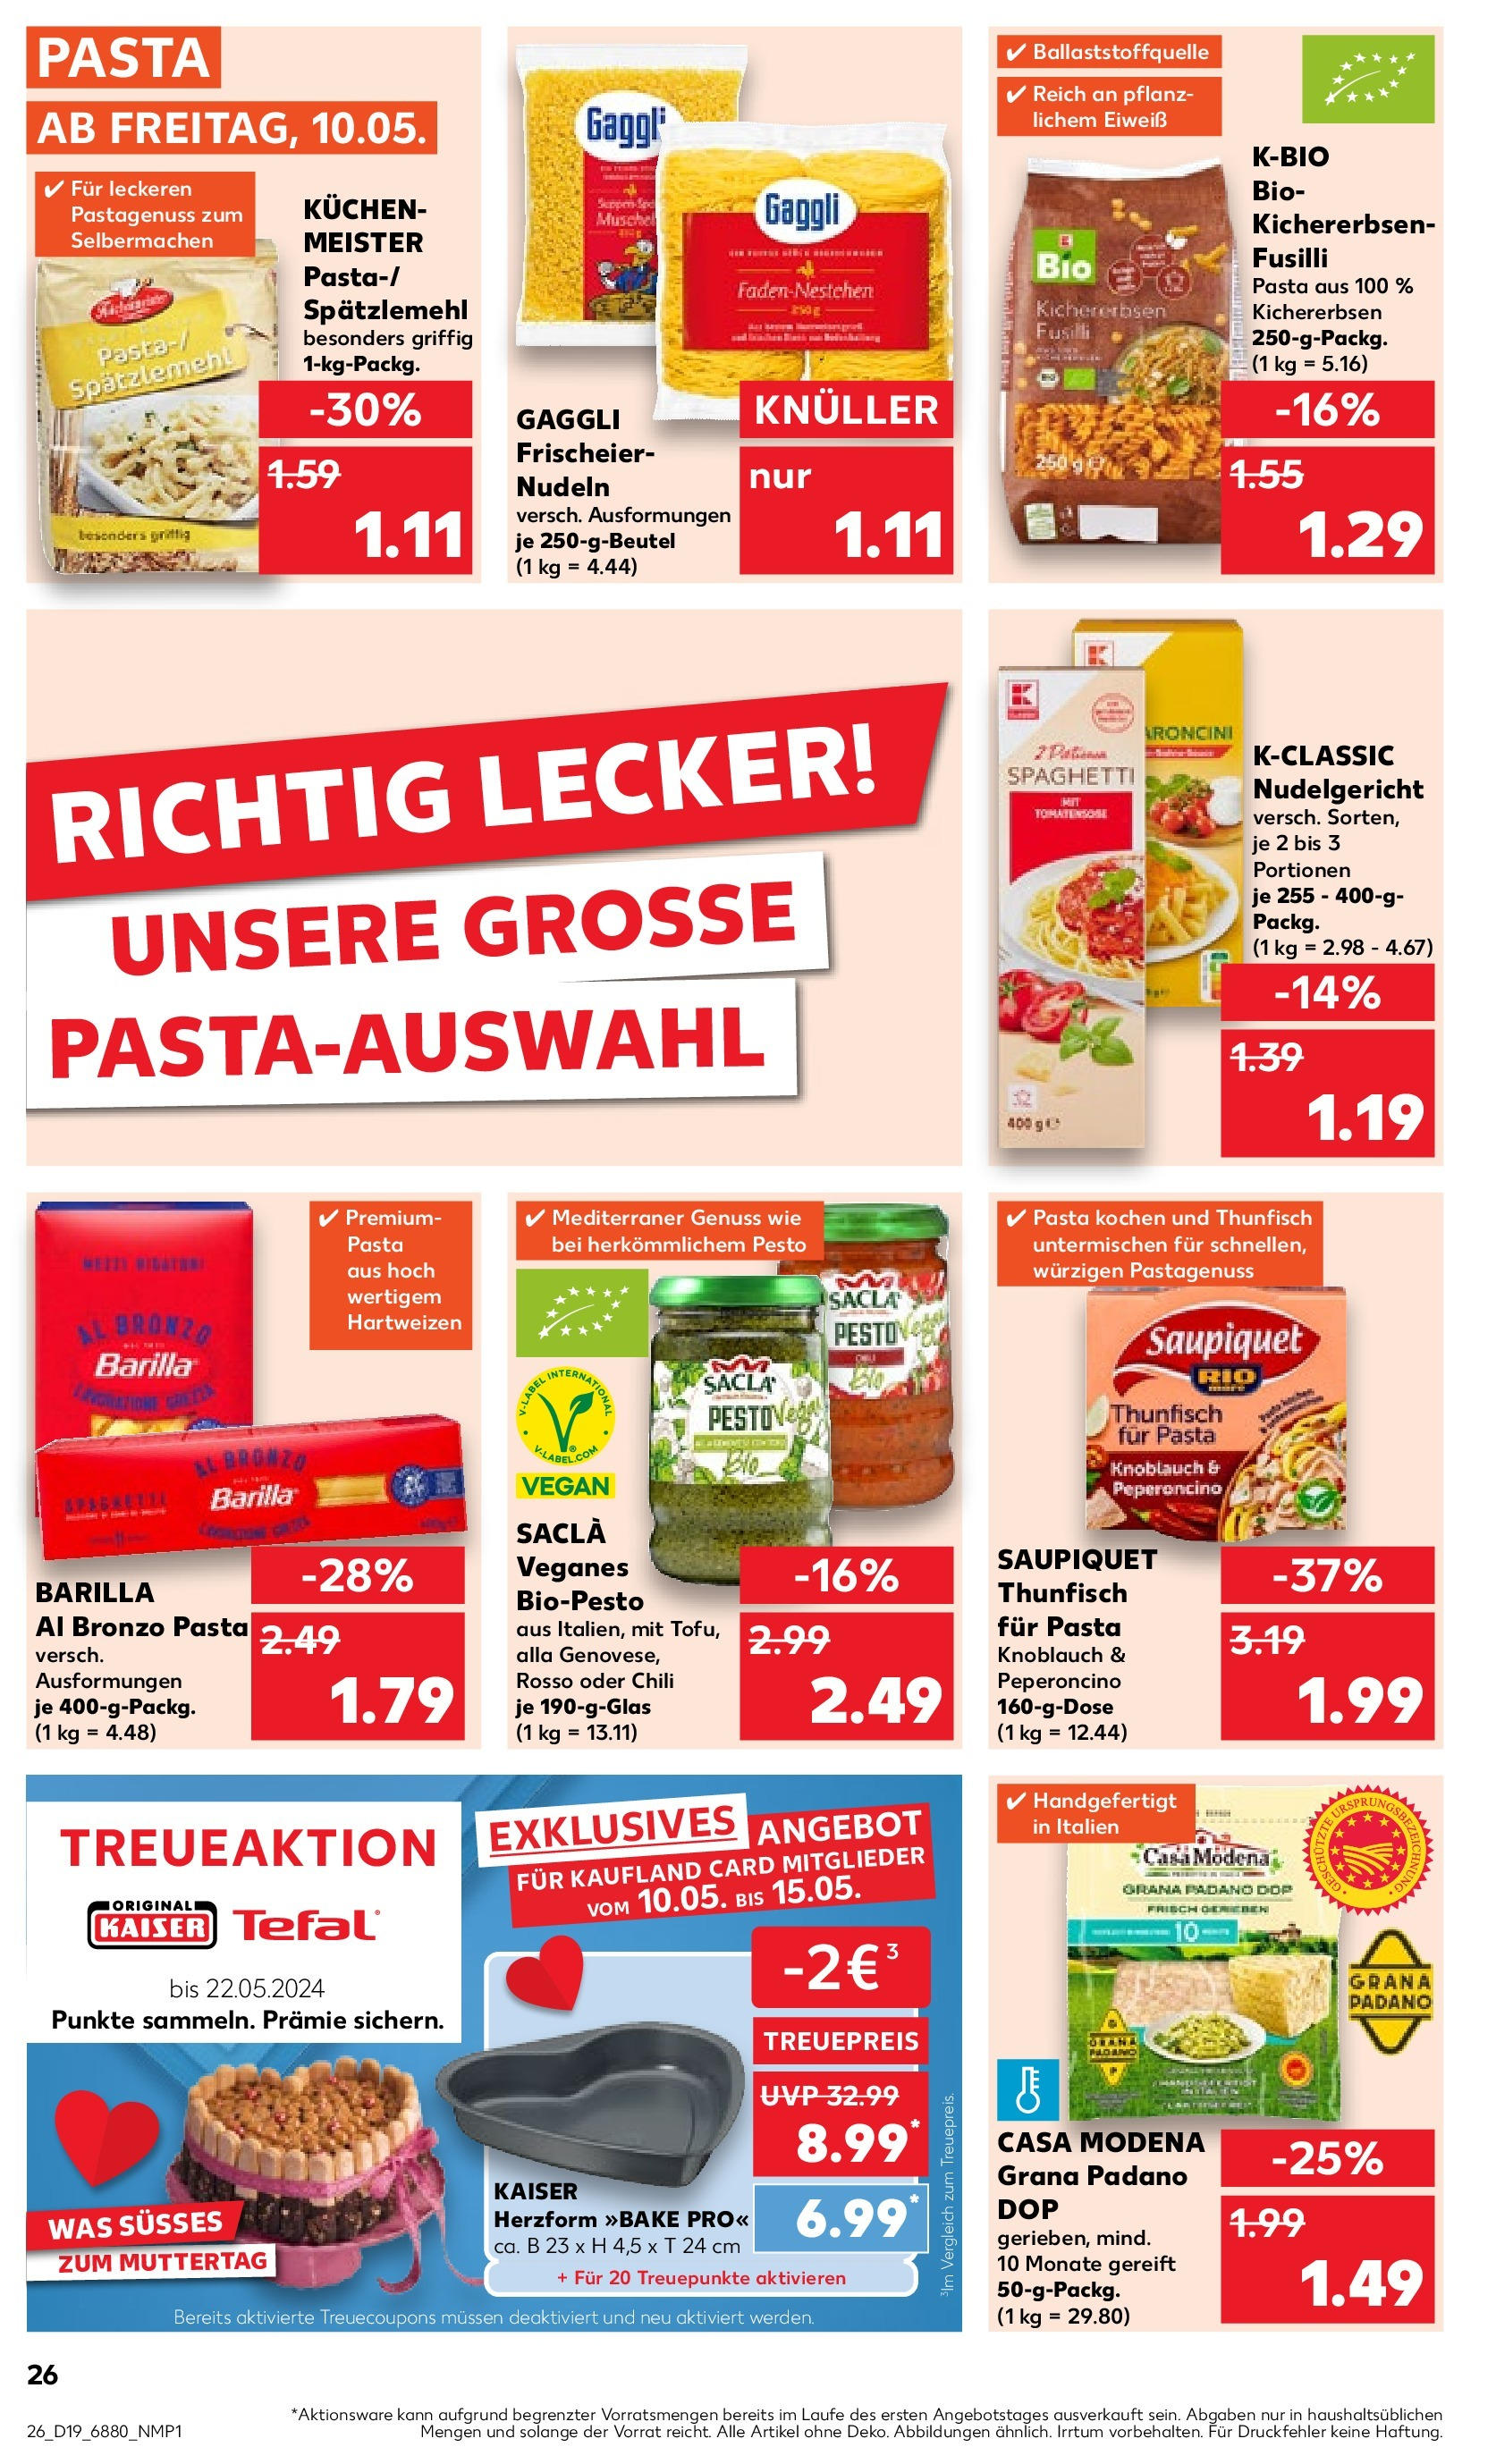 Kaufland - Saarland (ab 10.05.2024) » Angebote Online zum Blättern | Seite: 26 | Produkte: Barilla, Knoblauch, Chili, Pasta